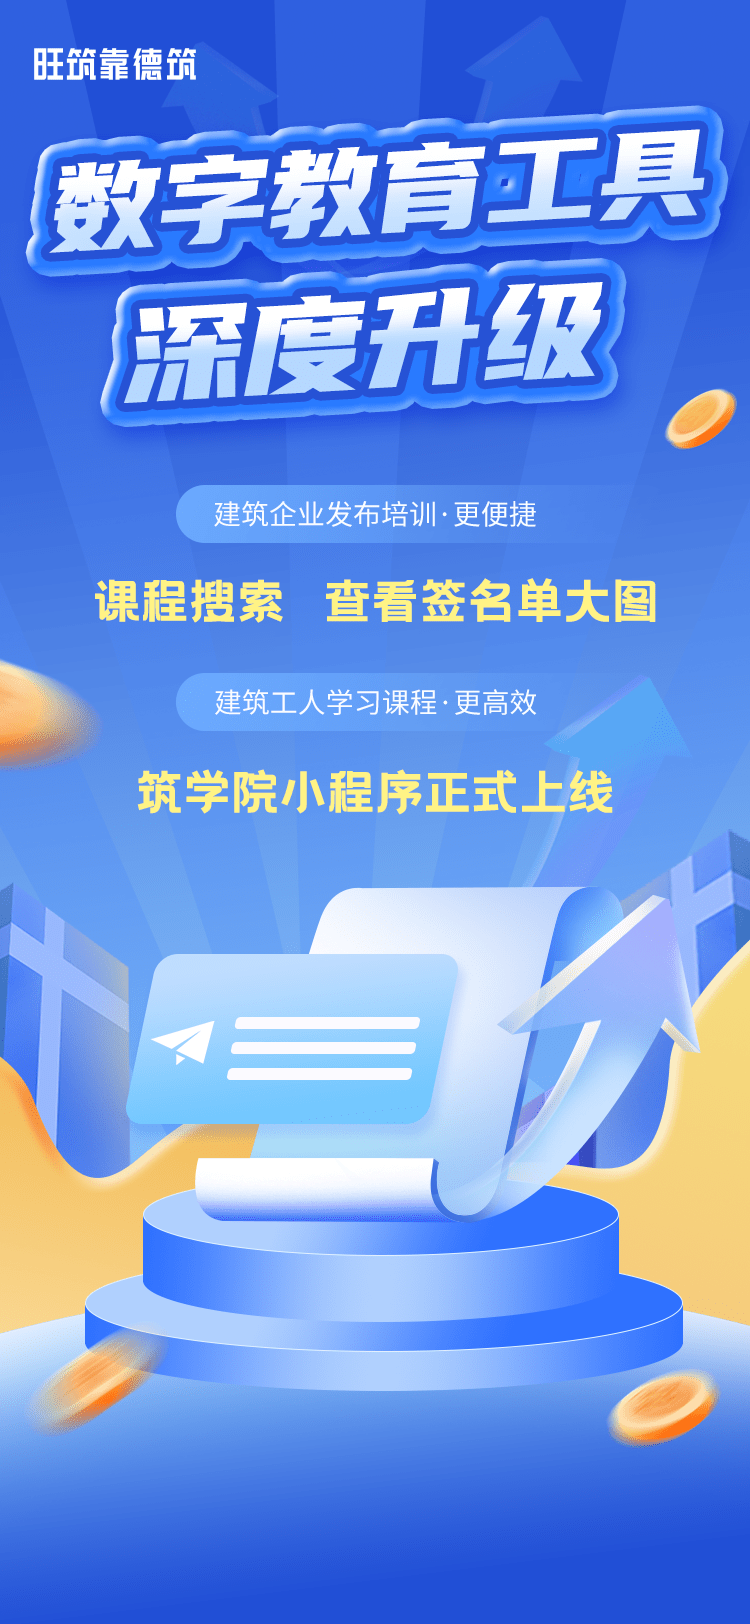 旺筑网络与上海宝冶深化合作 数字教育工具实现深度升级